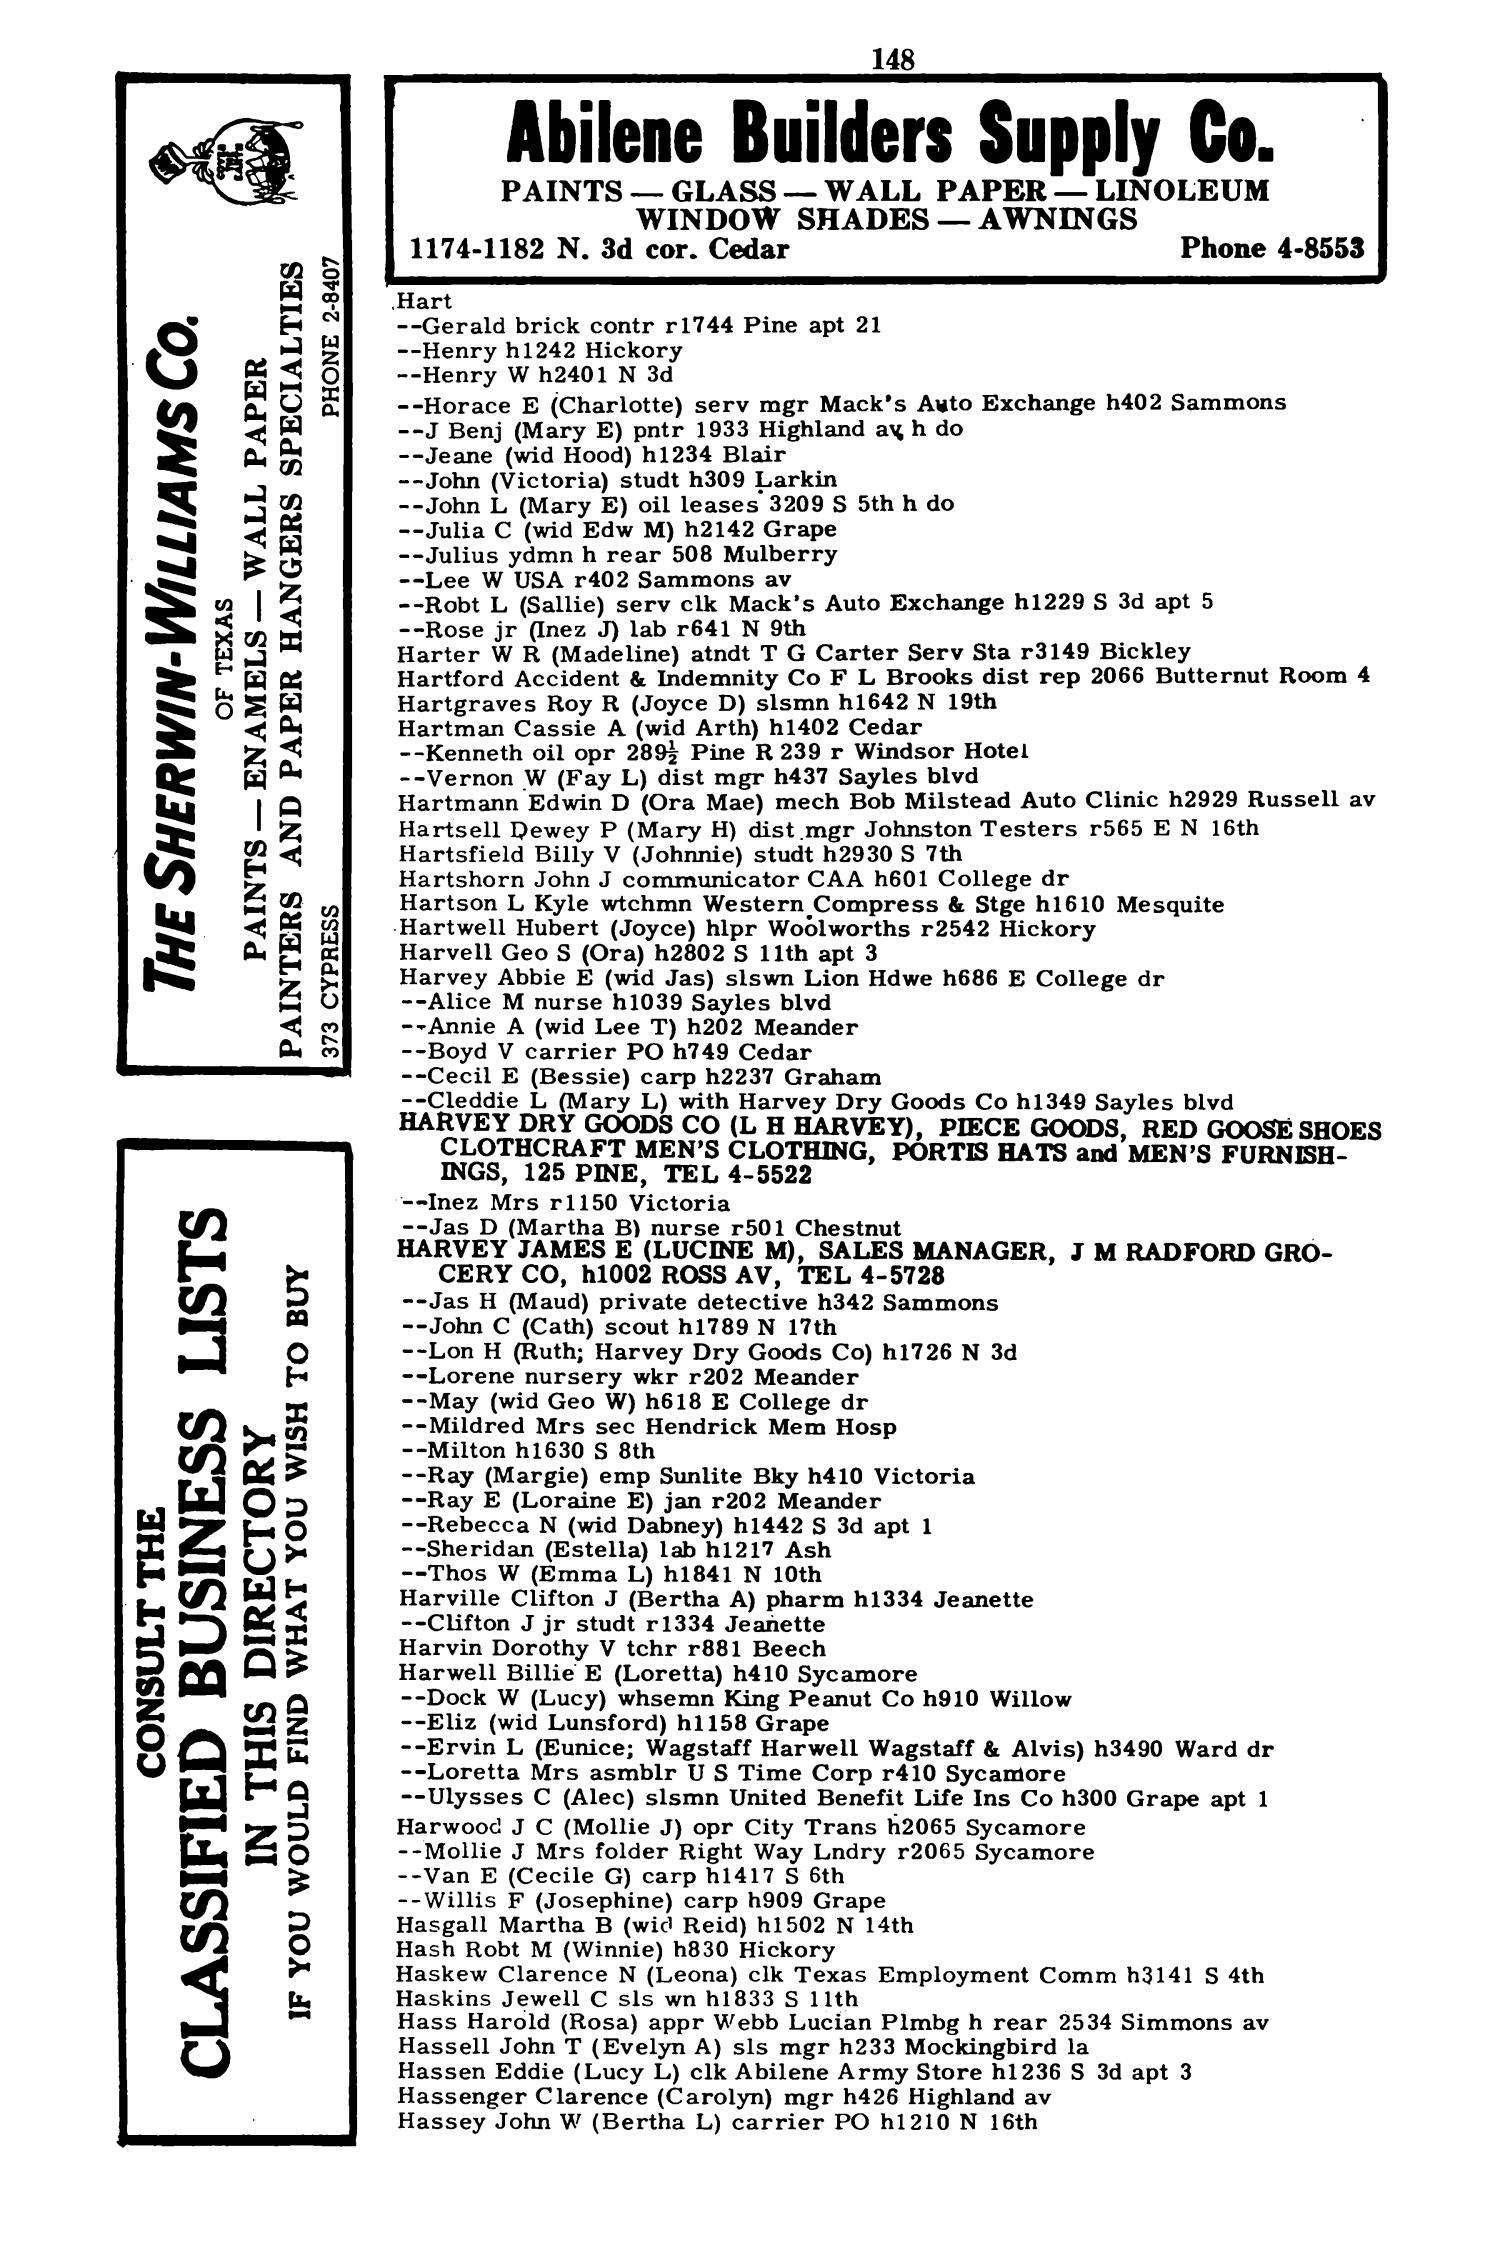 Worley's Abilene (Taylor County, Texas) City Directory, 1951
                                                
                                                    148
                                                